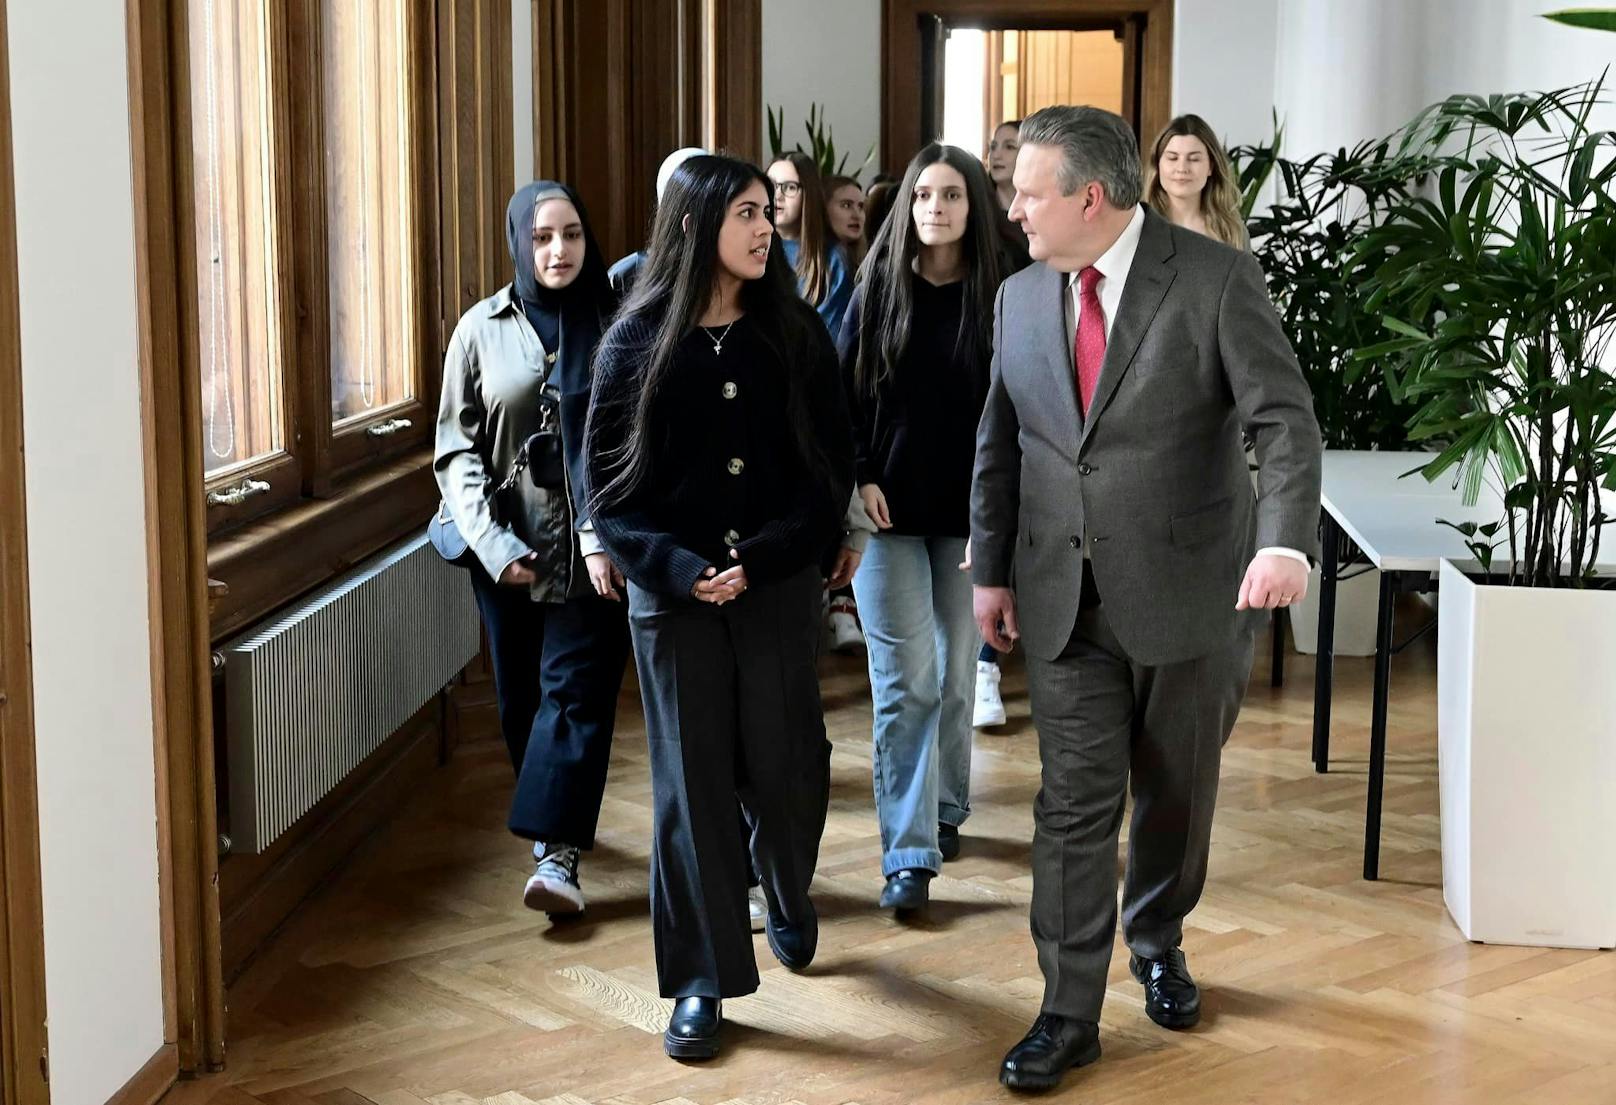 Bürgermeister Michael Ludwig hieß die Schulklasse im Rathaus herzlich willkommen.